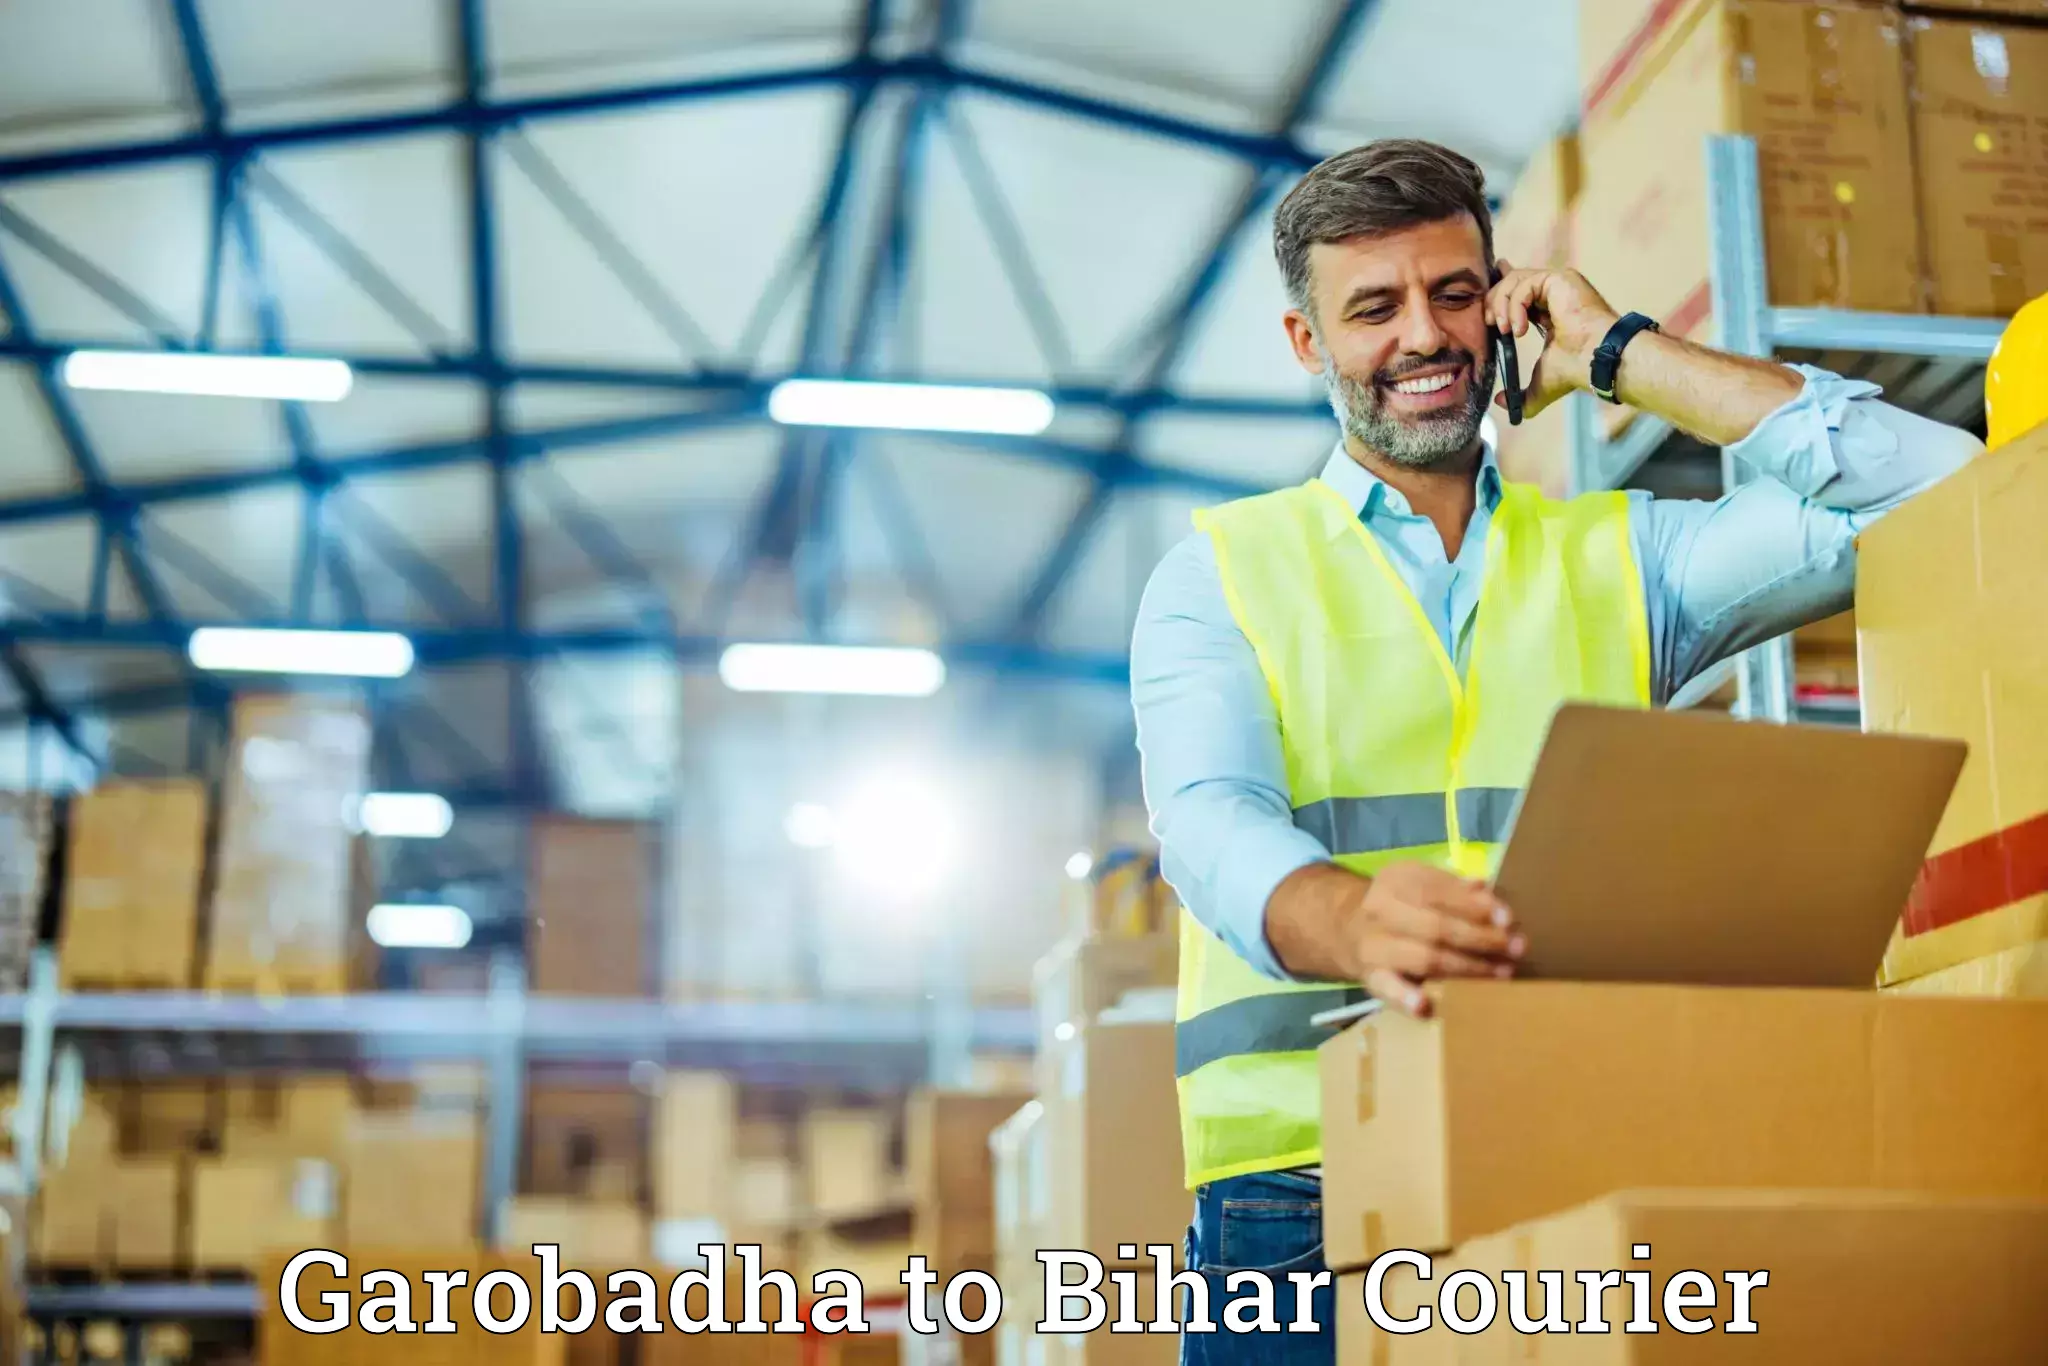 Professional moving company Garobadha to Banka